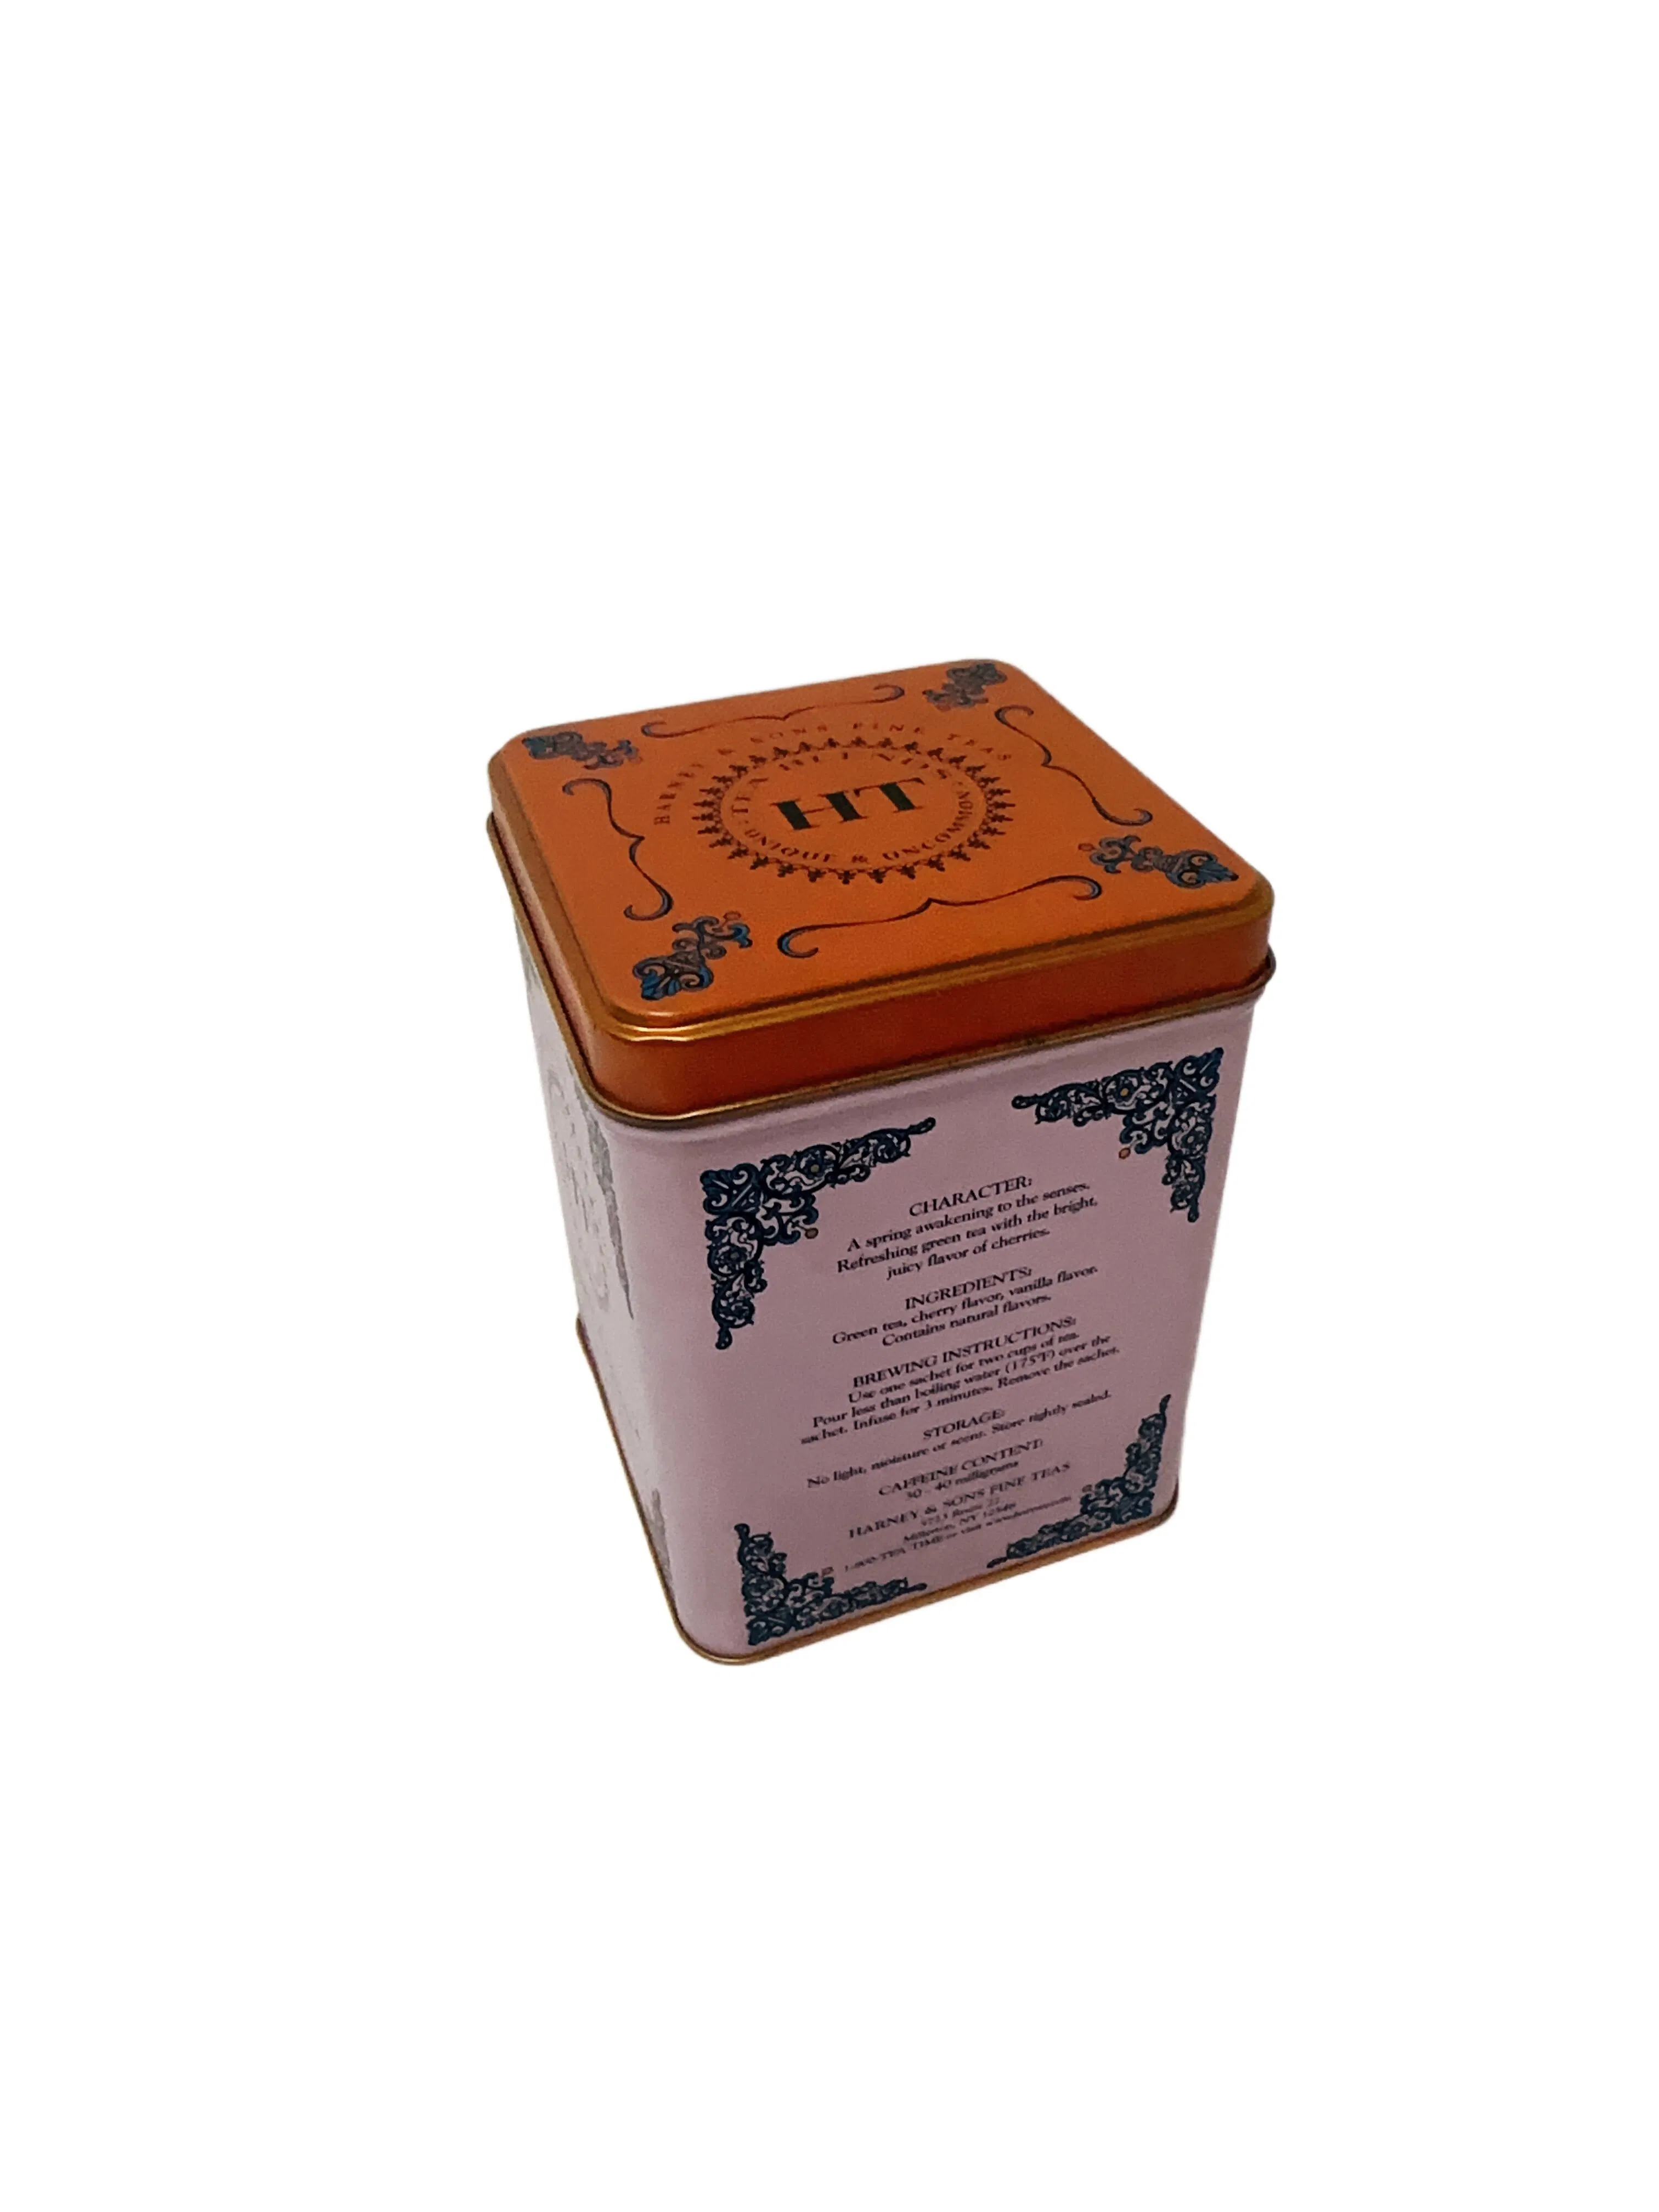 Fabrik Square Form Tee Zinn Metall Zinn Dose Geschenk Zinn Etui mit Scharnier Teebeutel Verpackung Dose Box